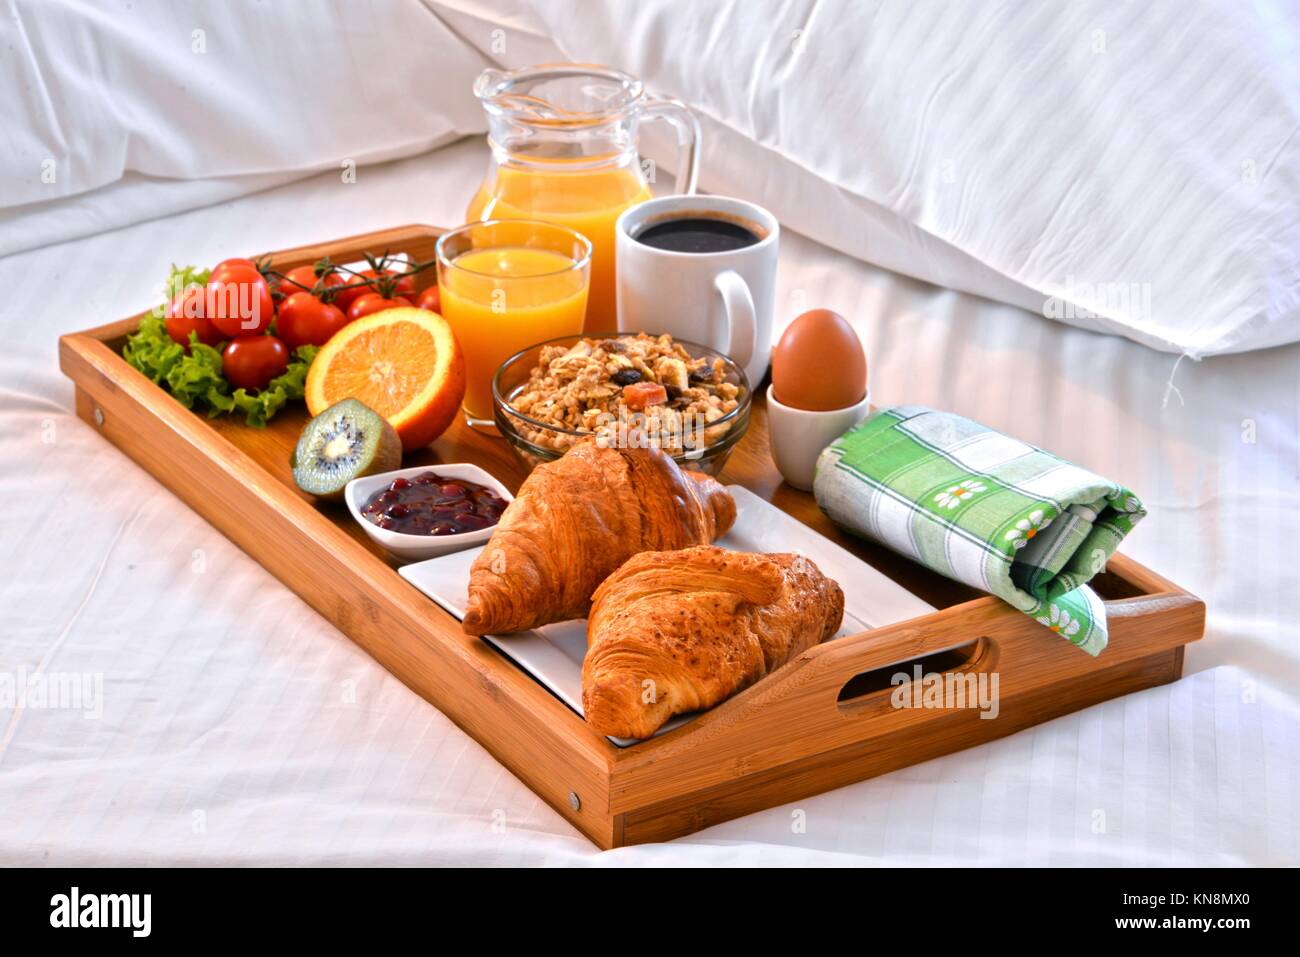 Plateau de petit-déjeuner au lit dans la chambre d'hôtel Photo